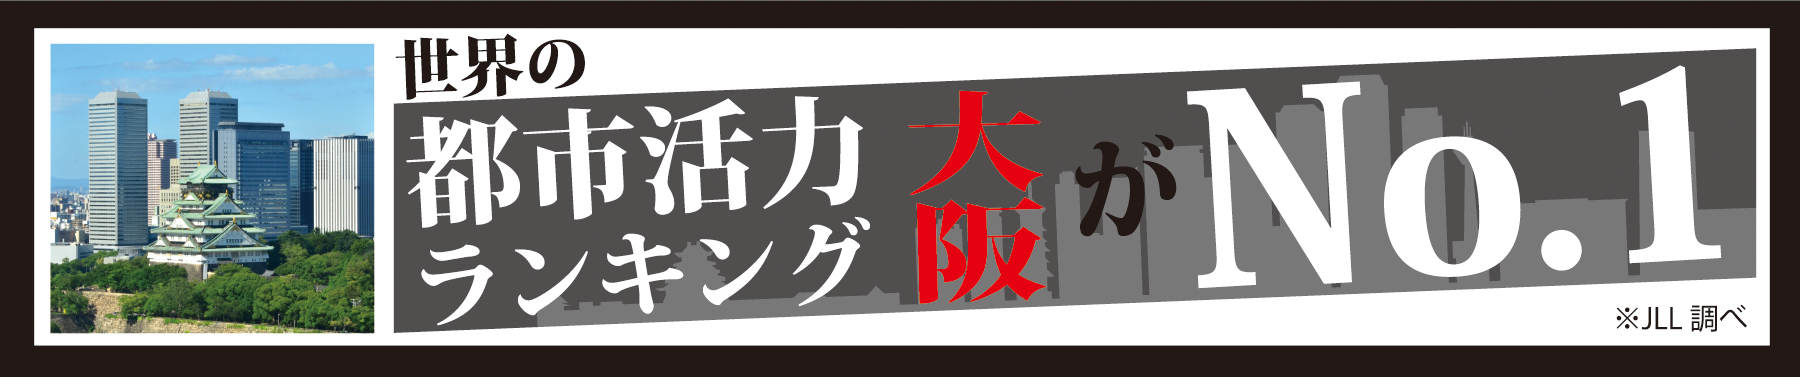 Osaka News Banner